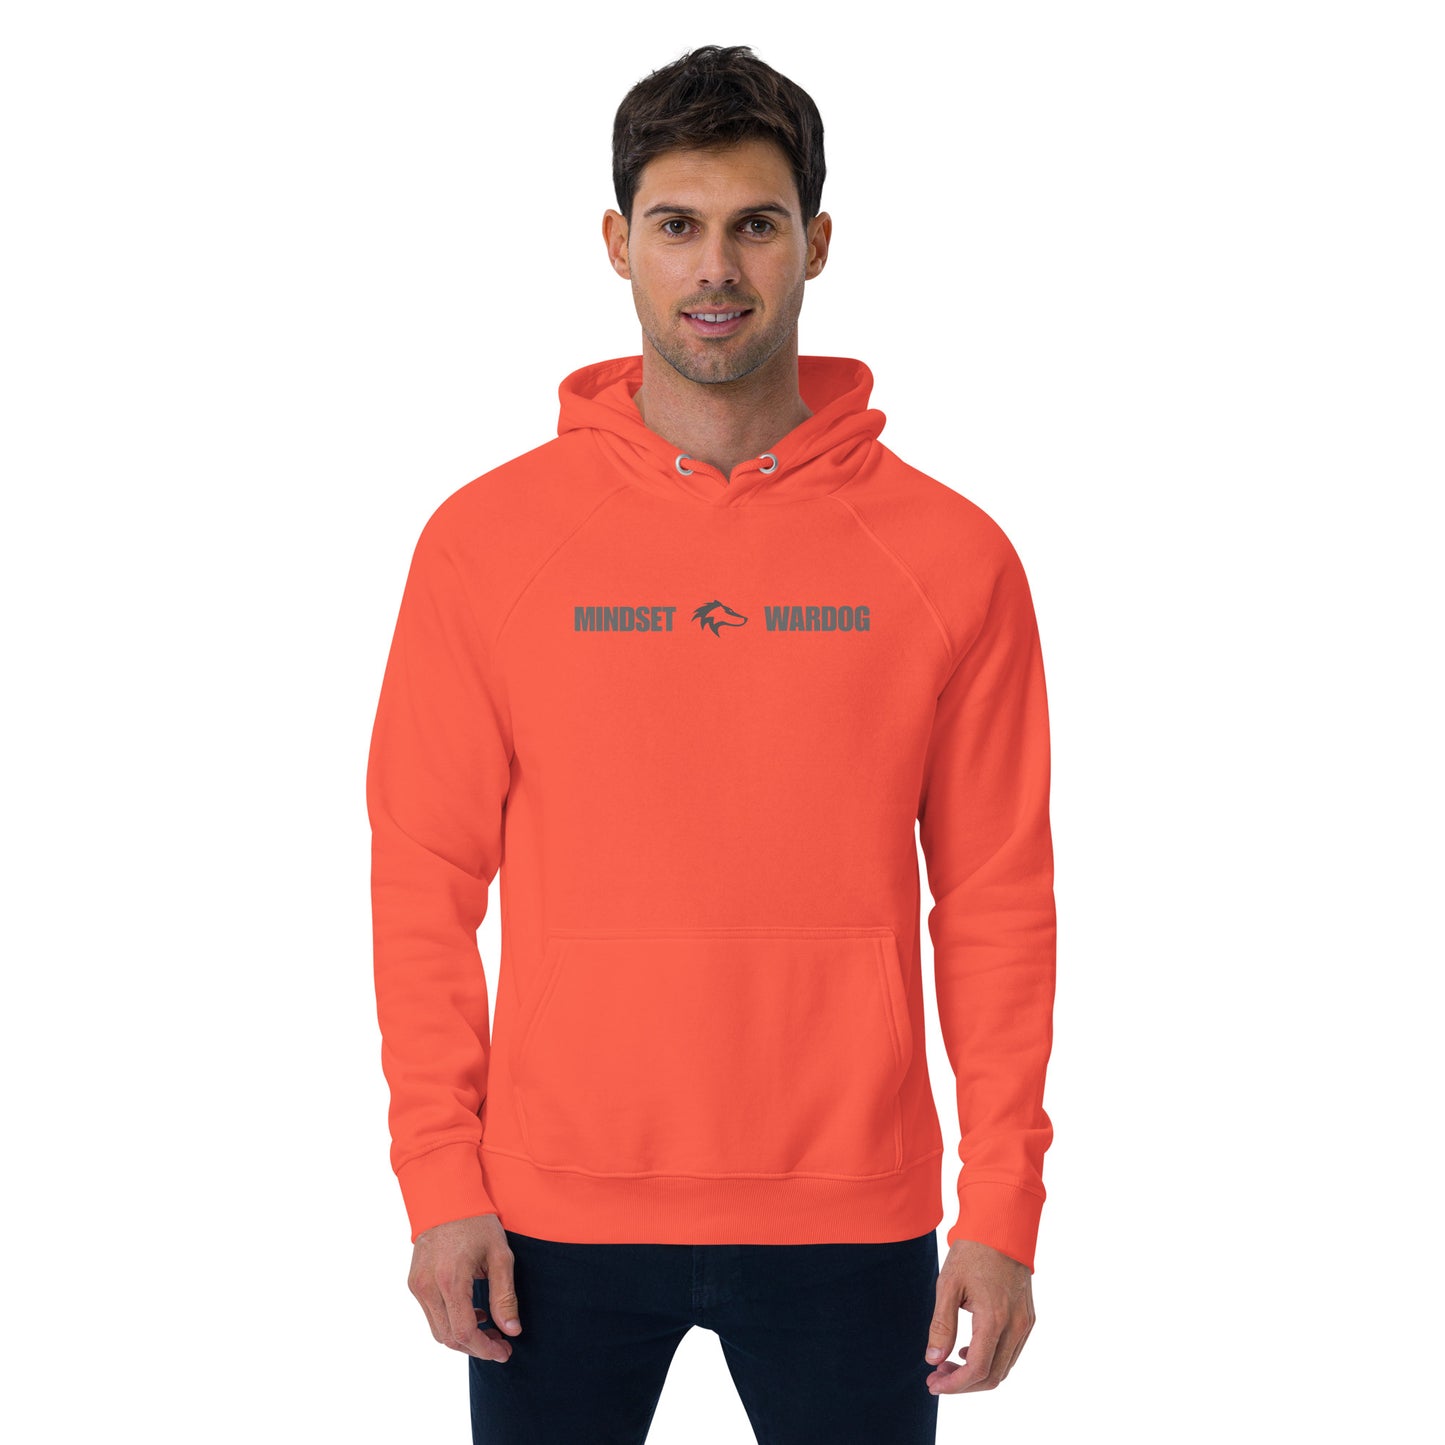 Unisex WARDOG hoodie